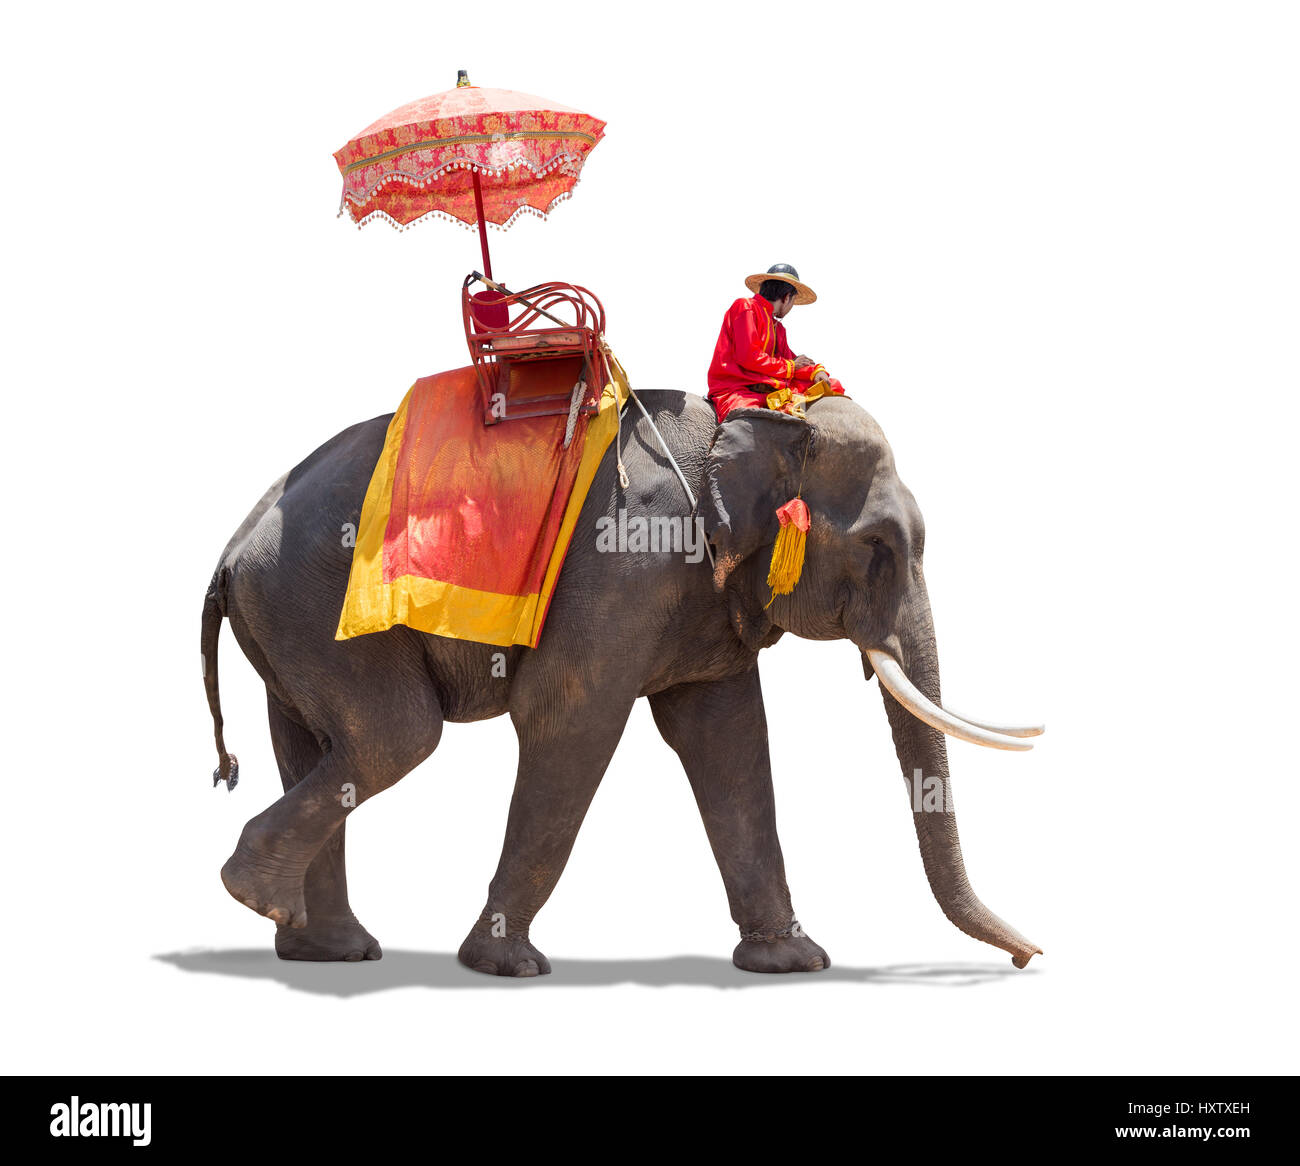 Pour les touristes de l'éléphant à Ayutthaya, Thaïlande. isolé sur fond blanc avec clipping path Banque D'Images